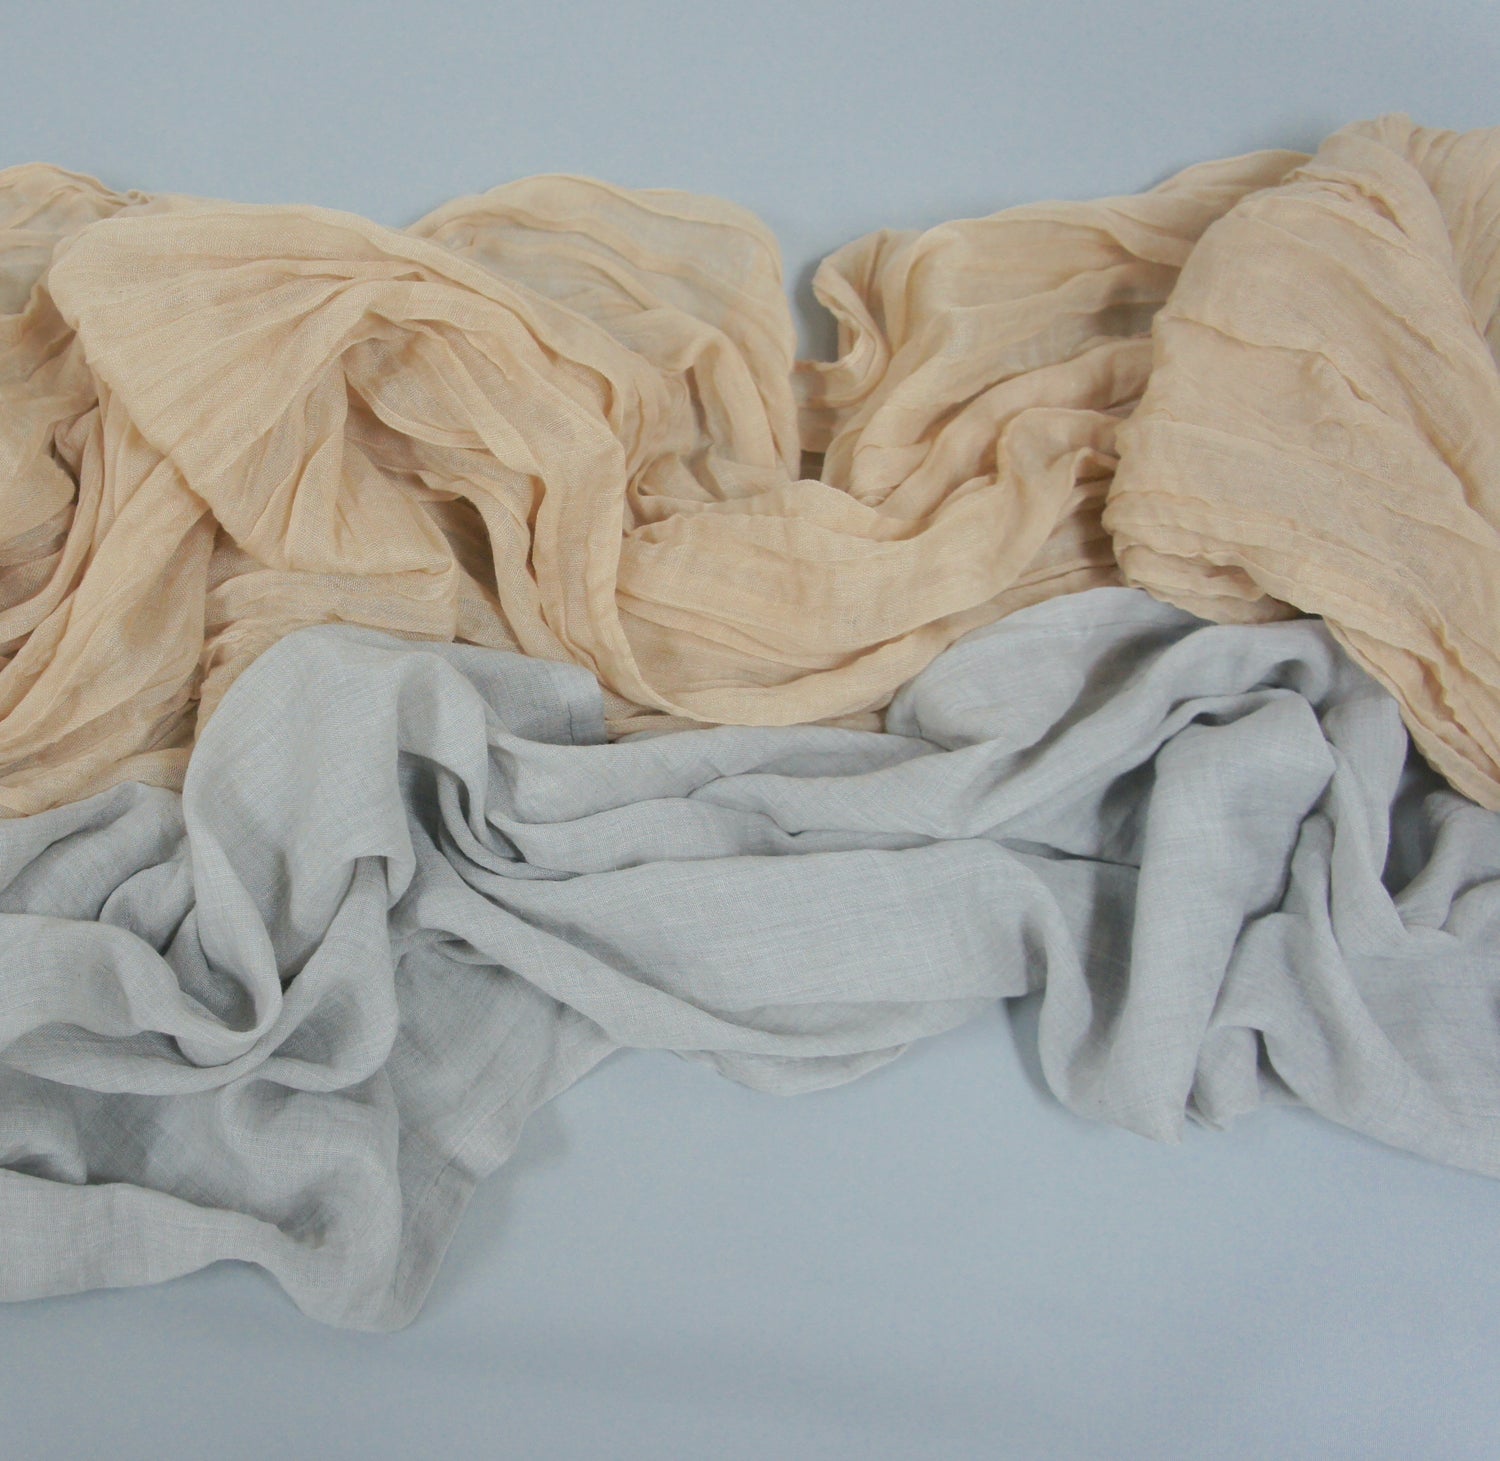 Tischläufer aus Baumwolle in 3 Farben erhältlich: Grau, Sand und Salbei